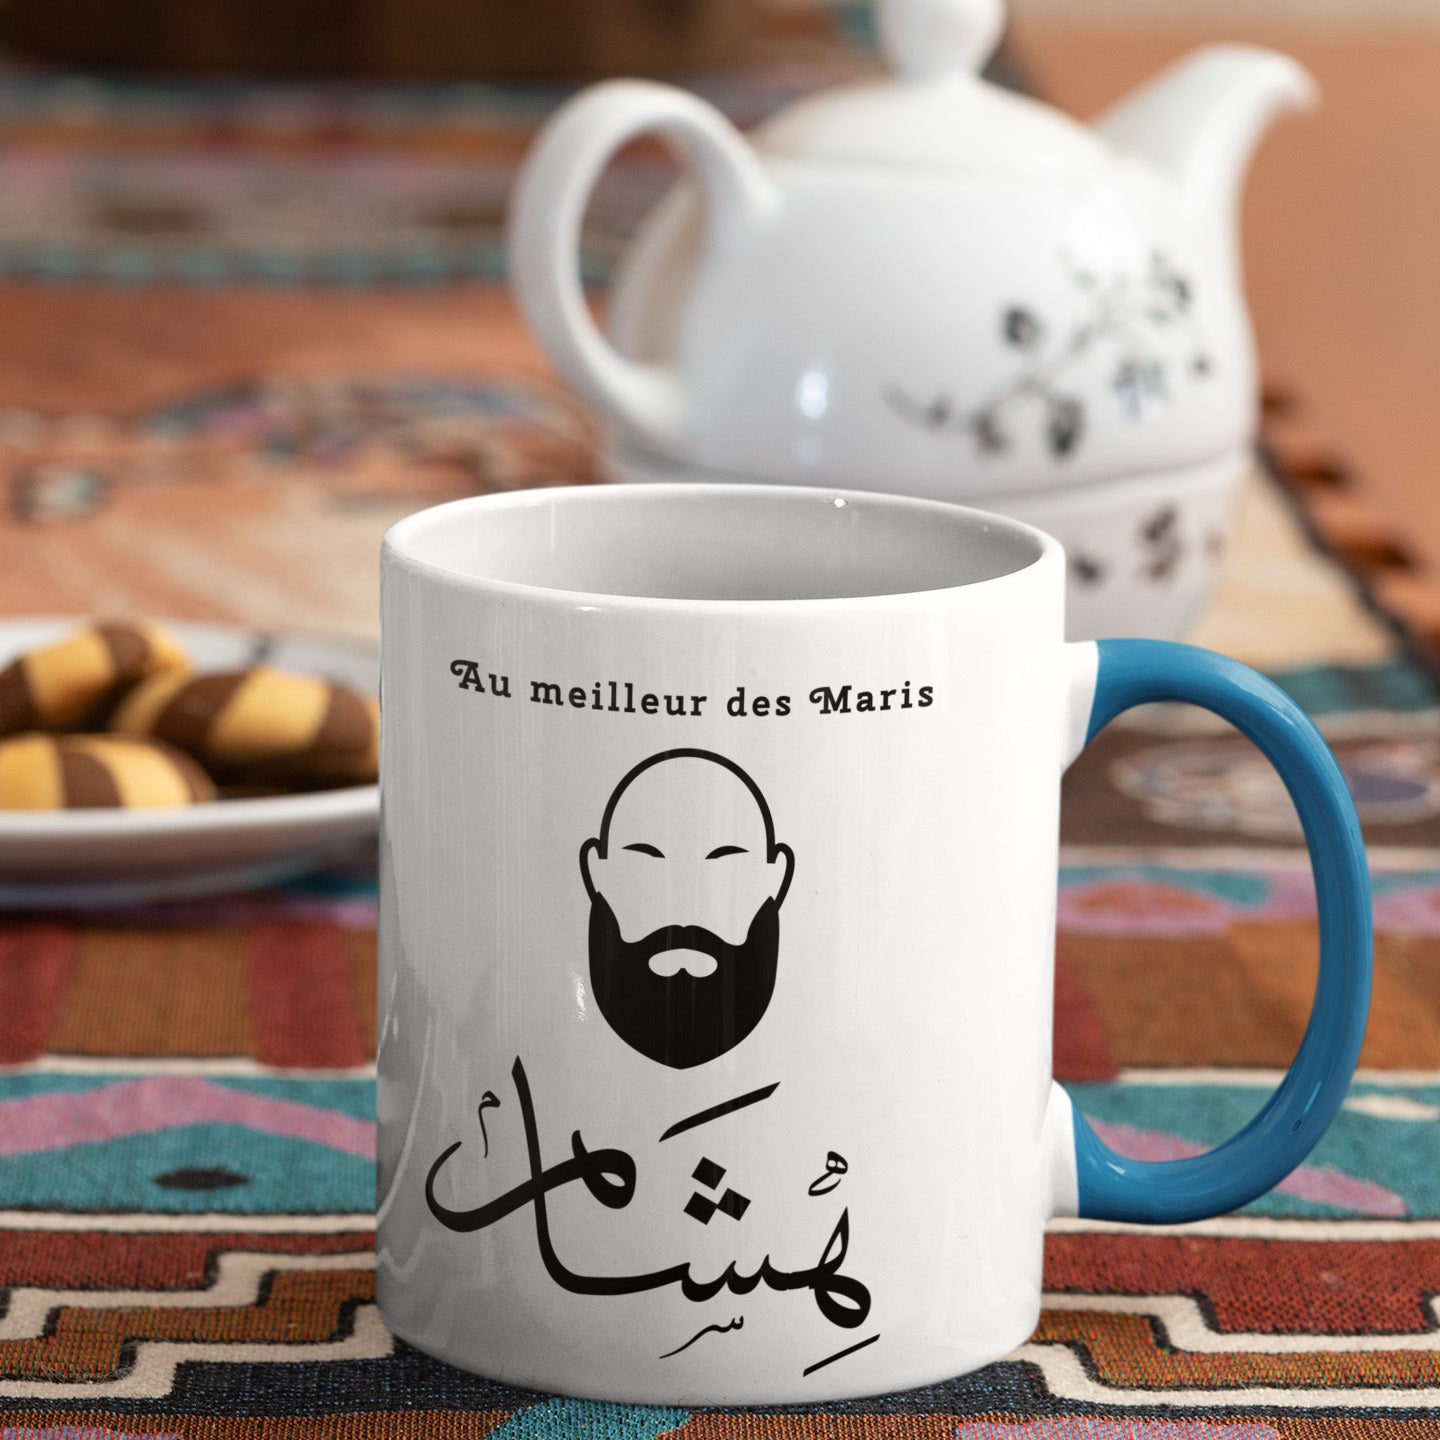 Hicham - Mug Calligraphie Arabe